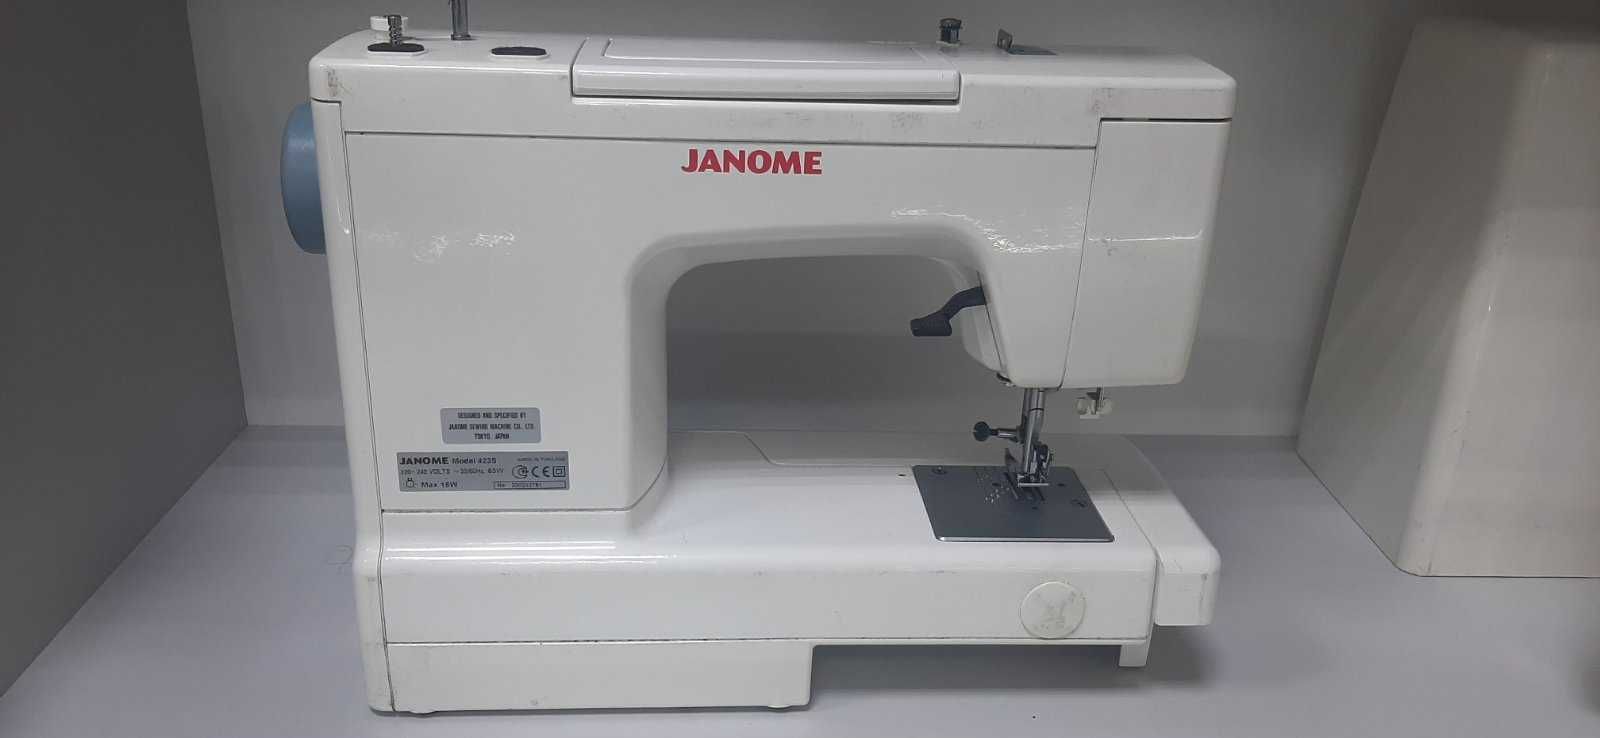 Швейная машина Janome 423s